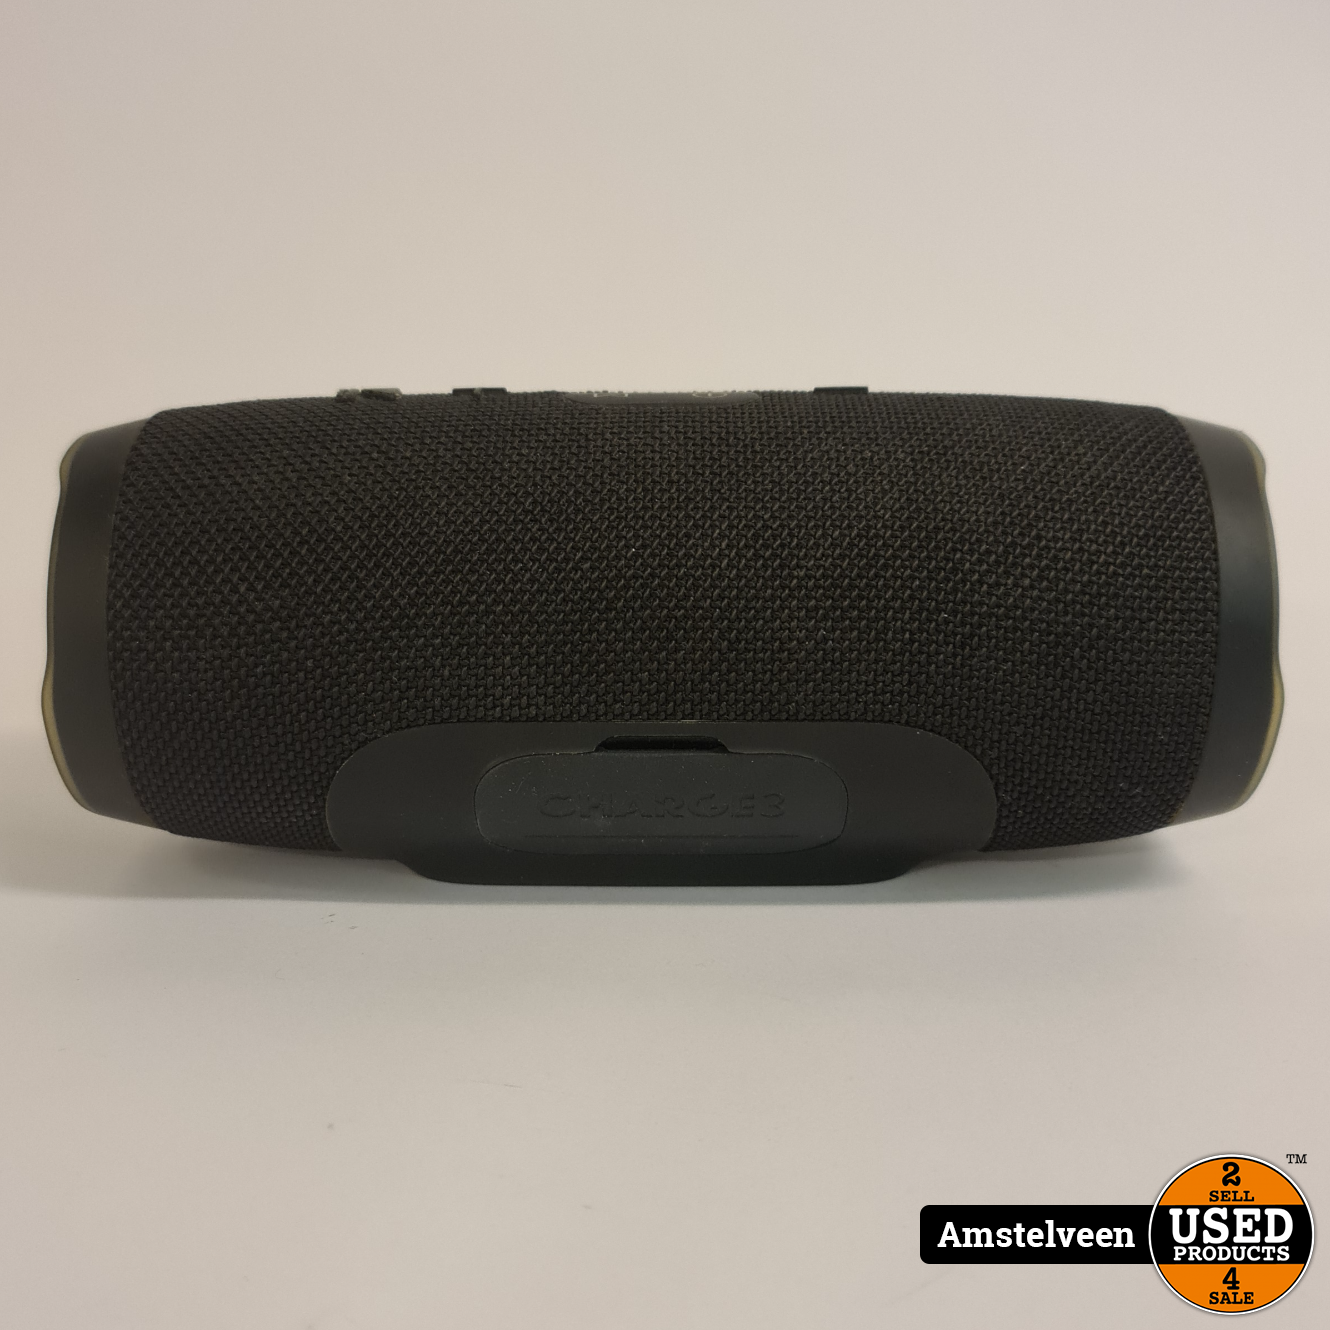 Redenaar Patch Steken JBL Charge 3 Stealth Edition draagbare Bluetooth luidspreker | Nette Staat  - Used Products Amstelveen